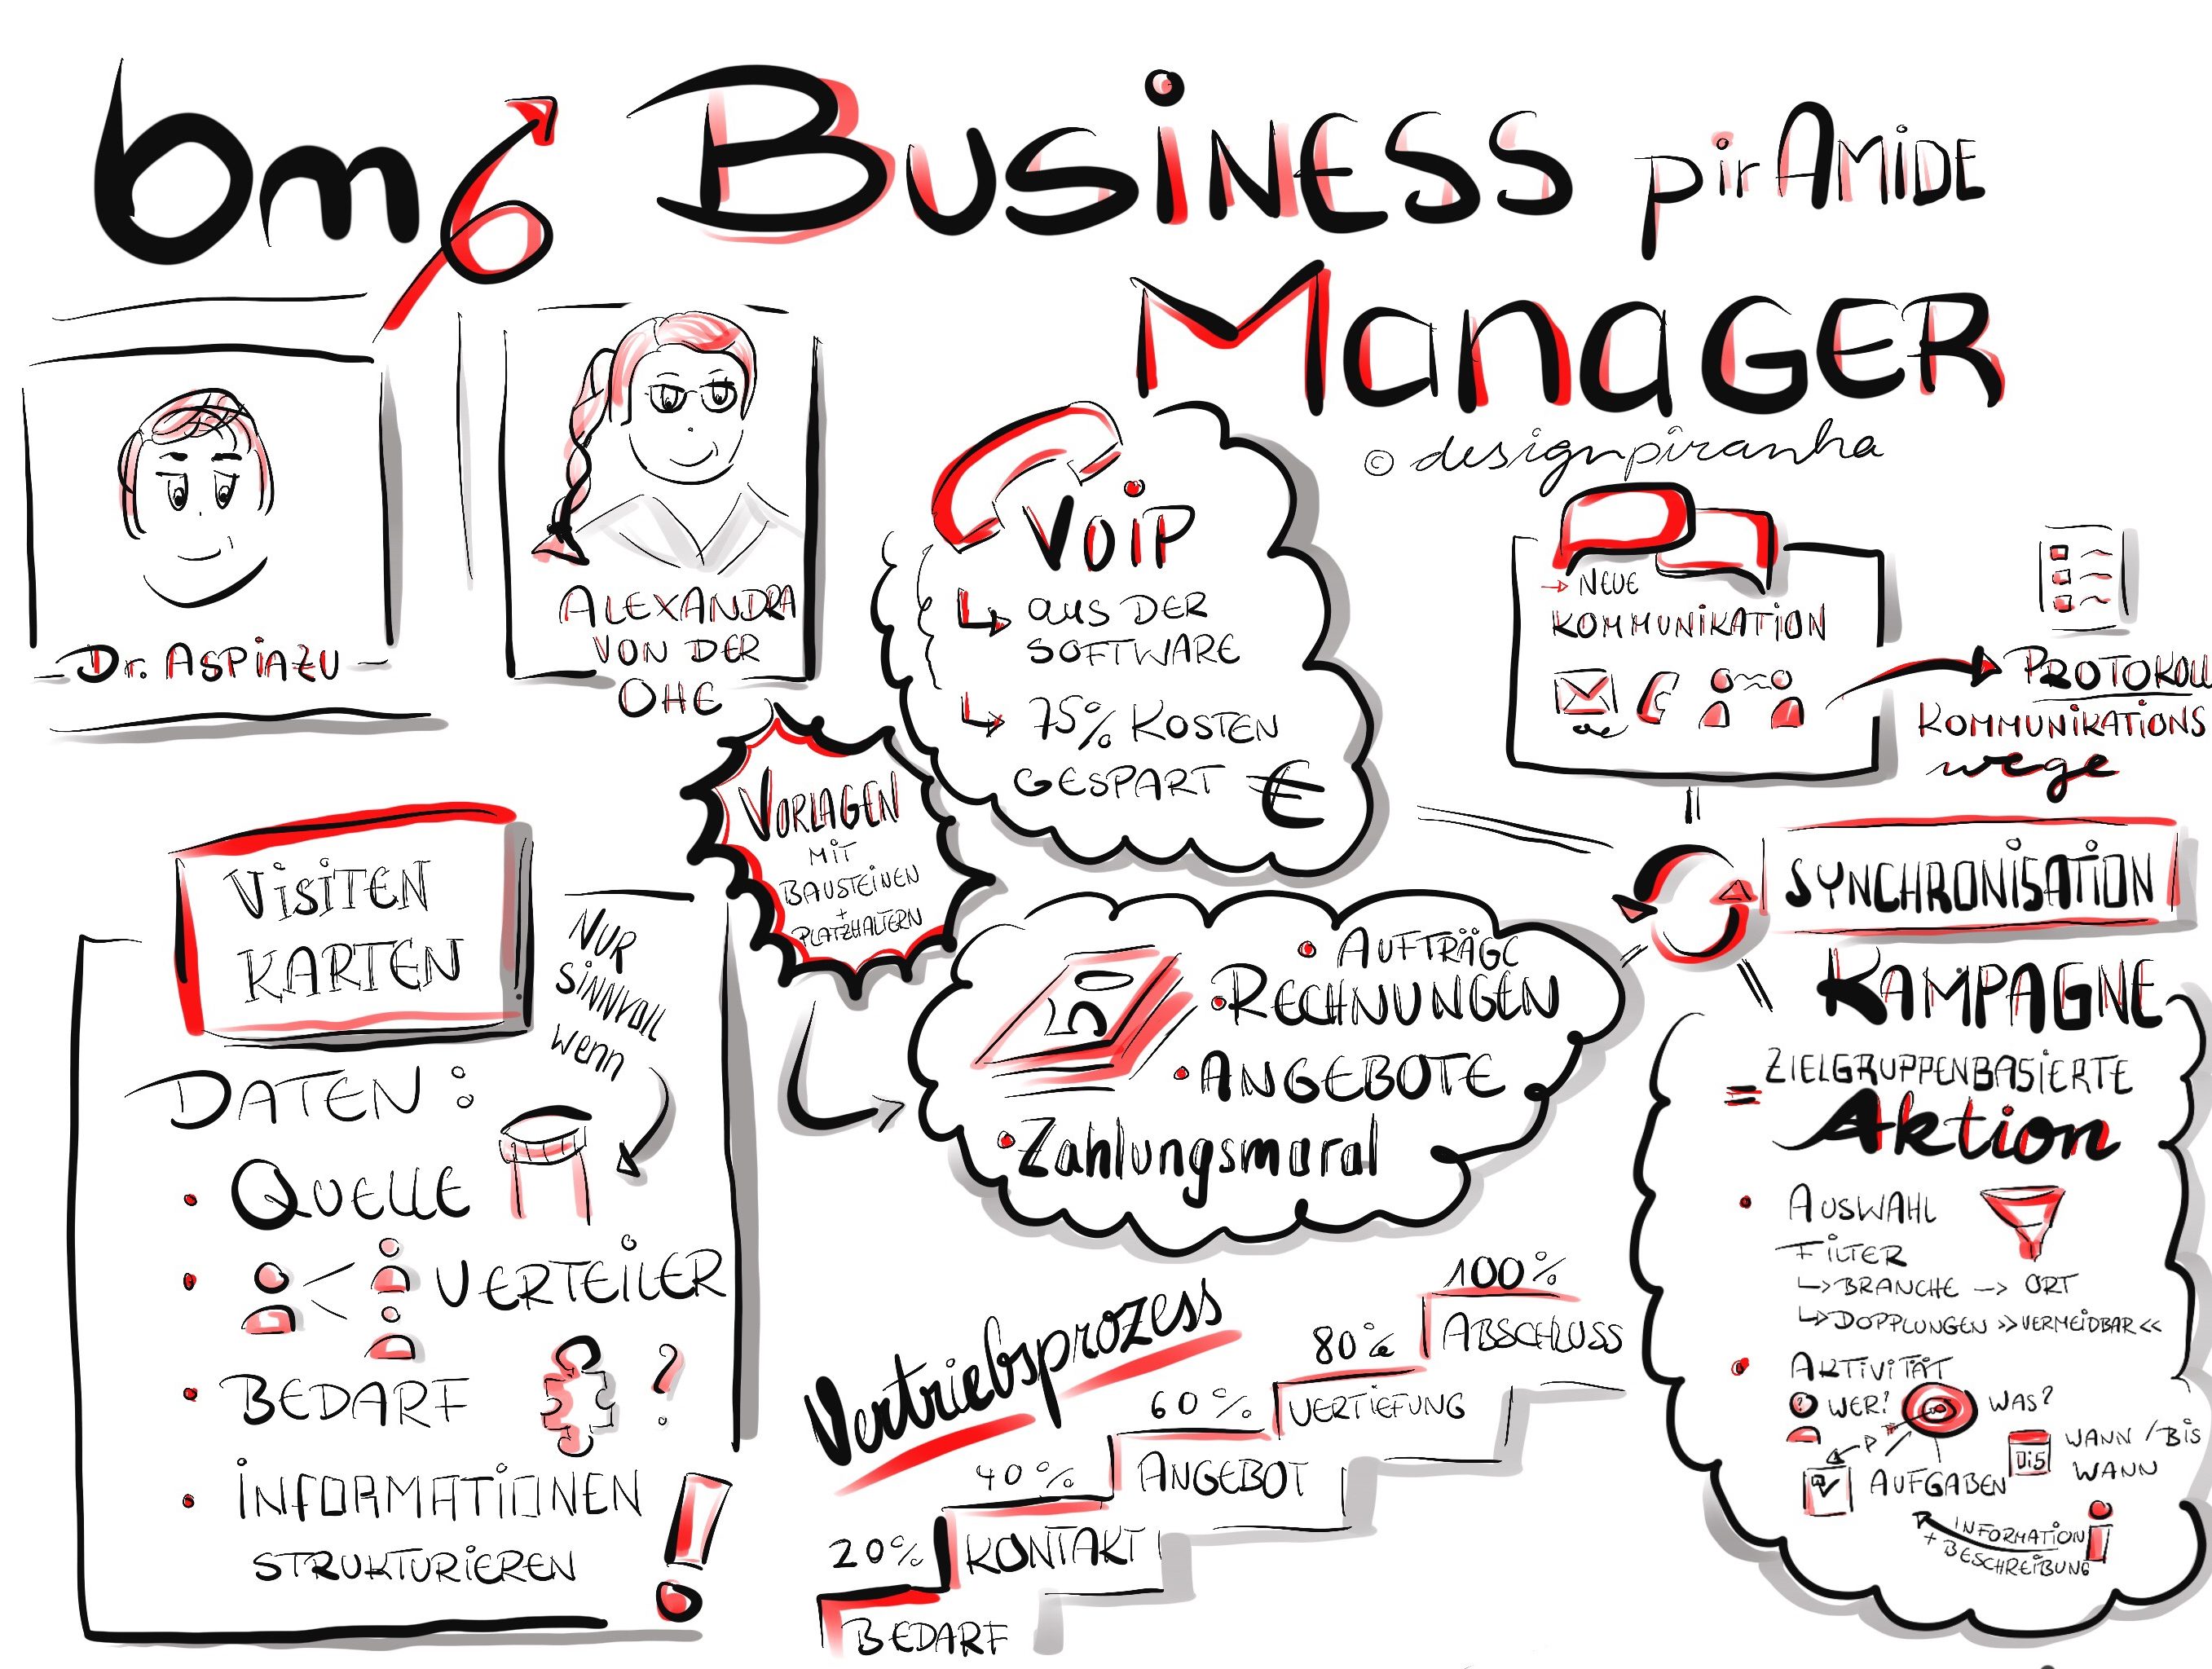 piramide-business-manager-sketchnote